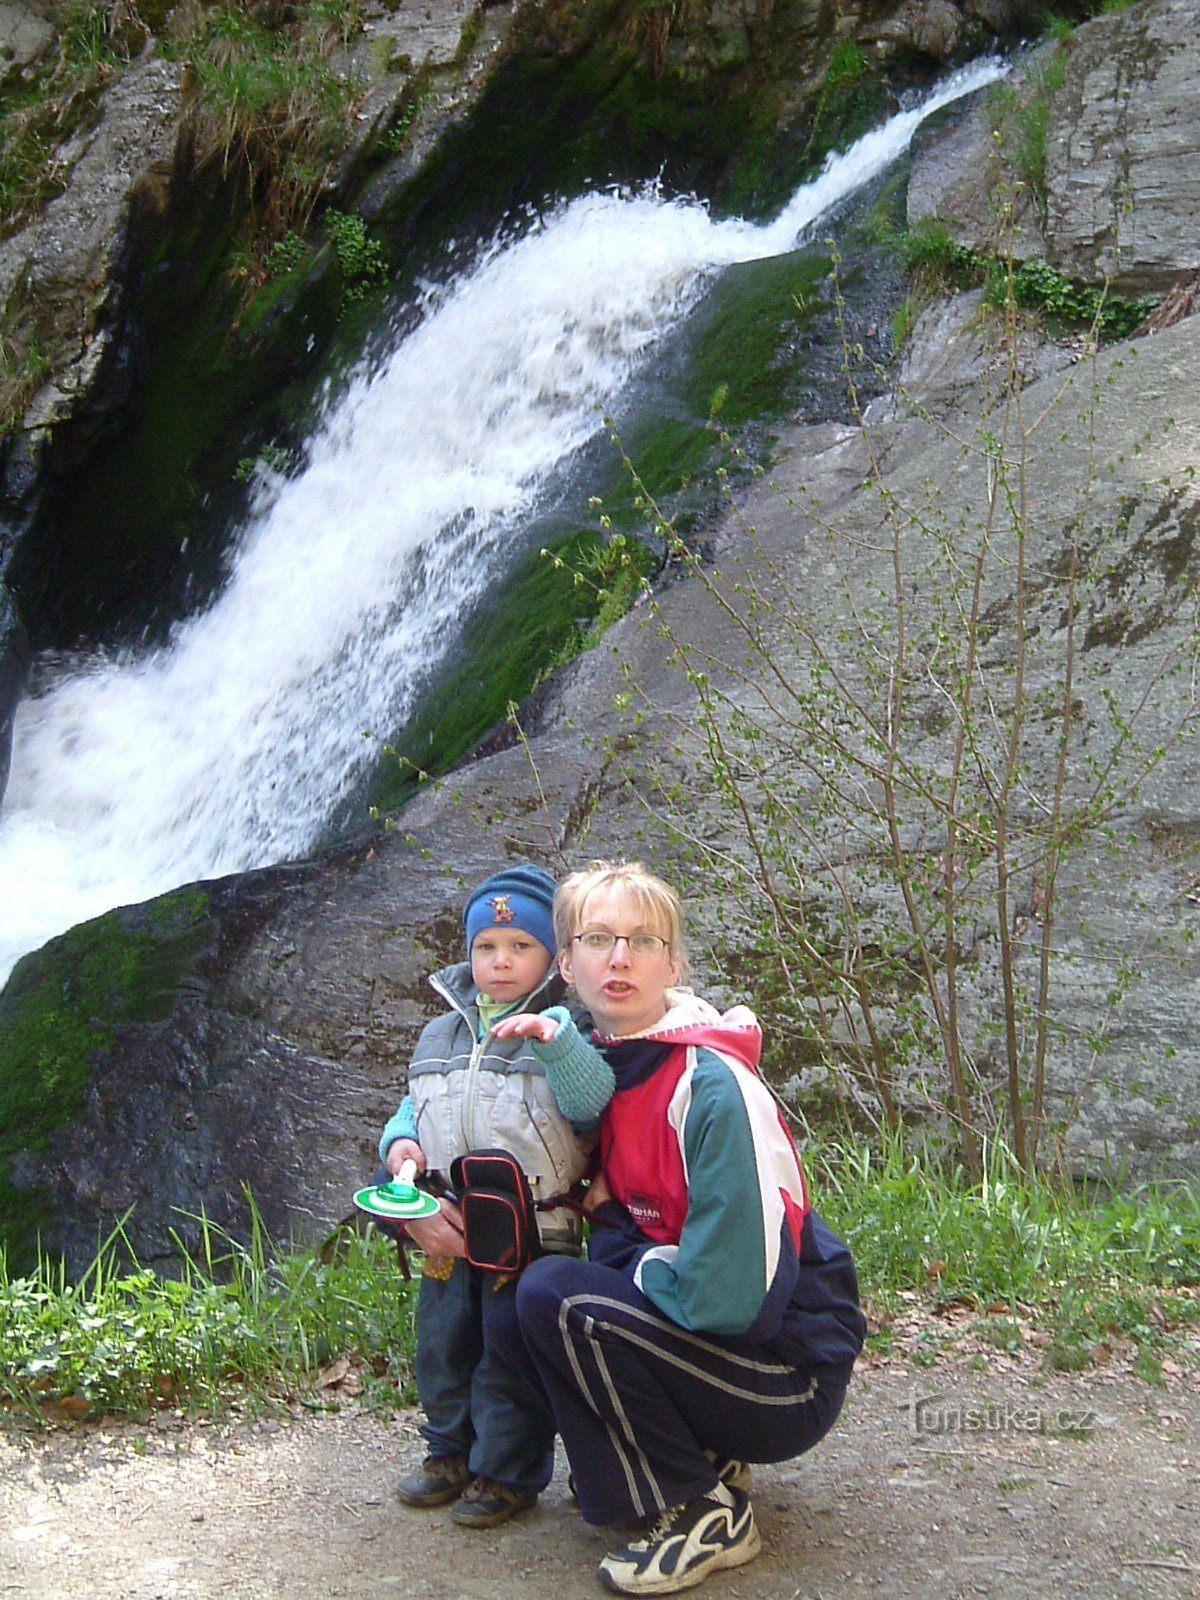 Rešov waterfalls near the village of Rešov